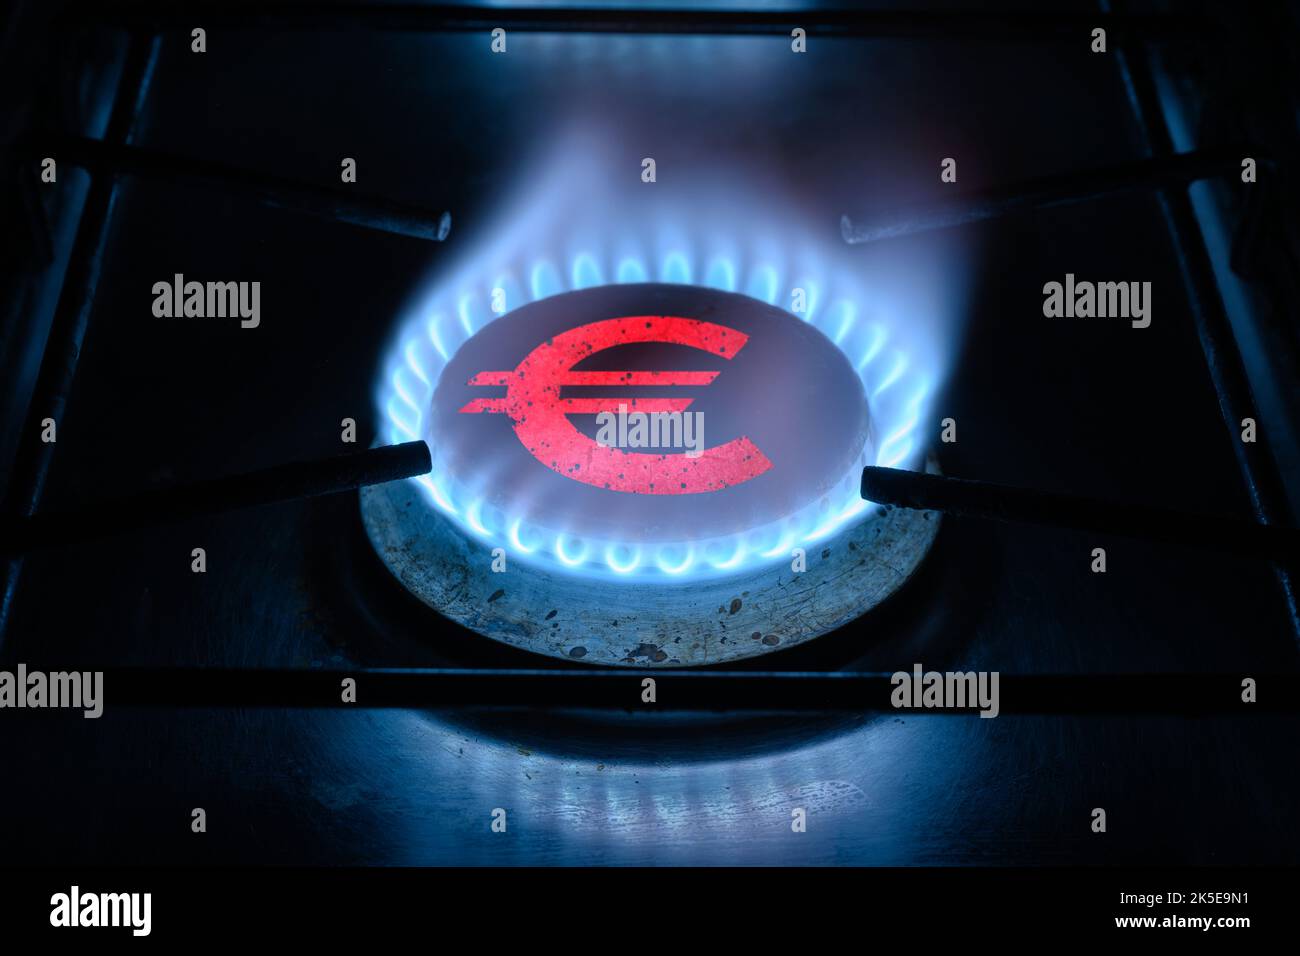 Brûleur à gaz et signe Euro, symbole de l'argent européen sur le poêle à gaz à la maison. Flamme de propane bleue et monnaie. Concept de crise énergétique, économie européenne, pétrole Banque D'Images